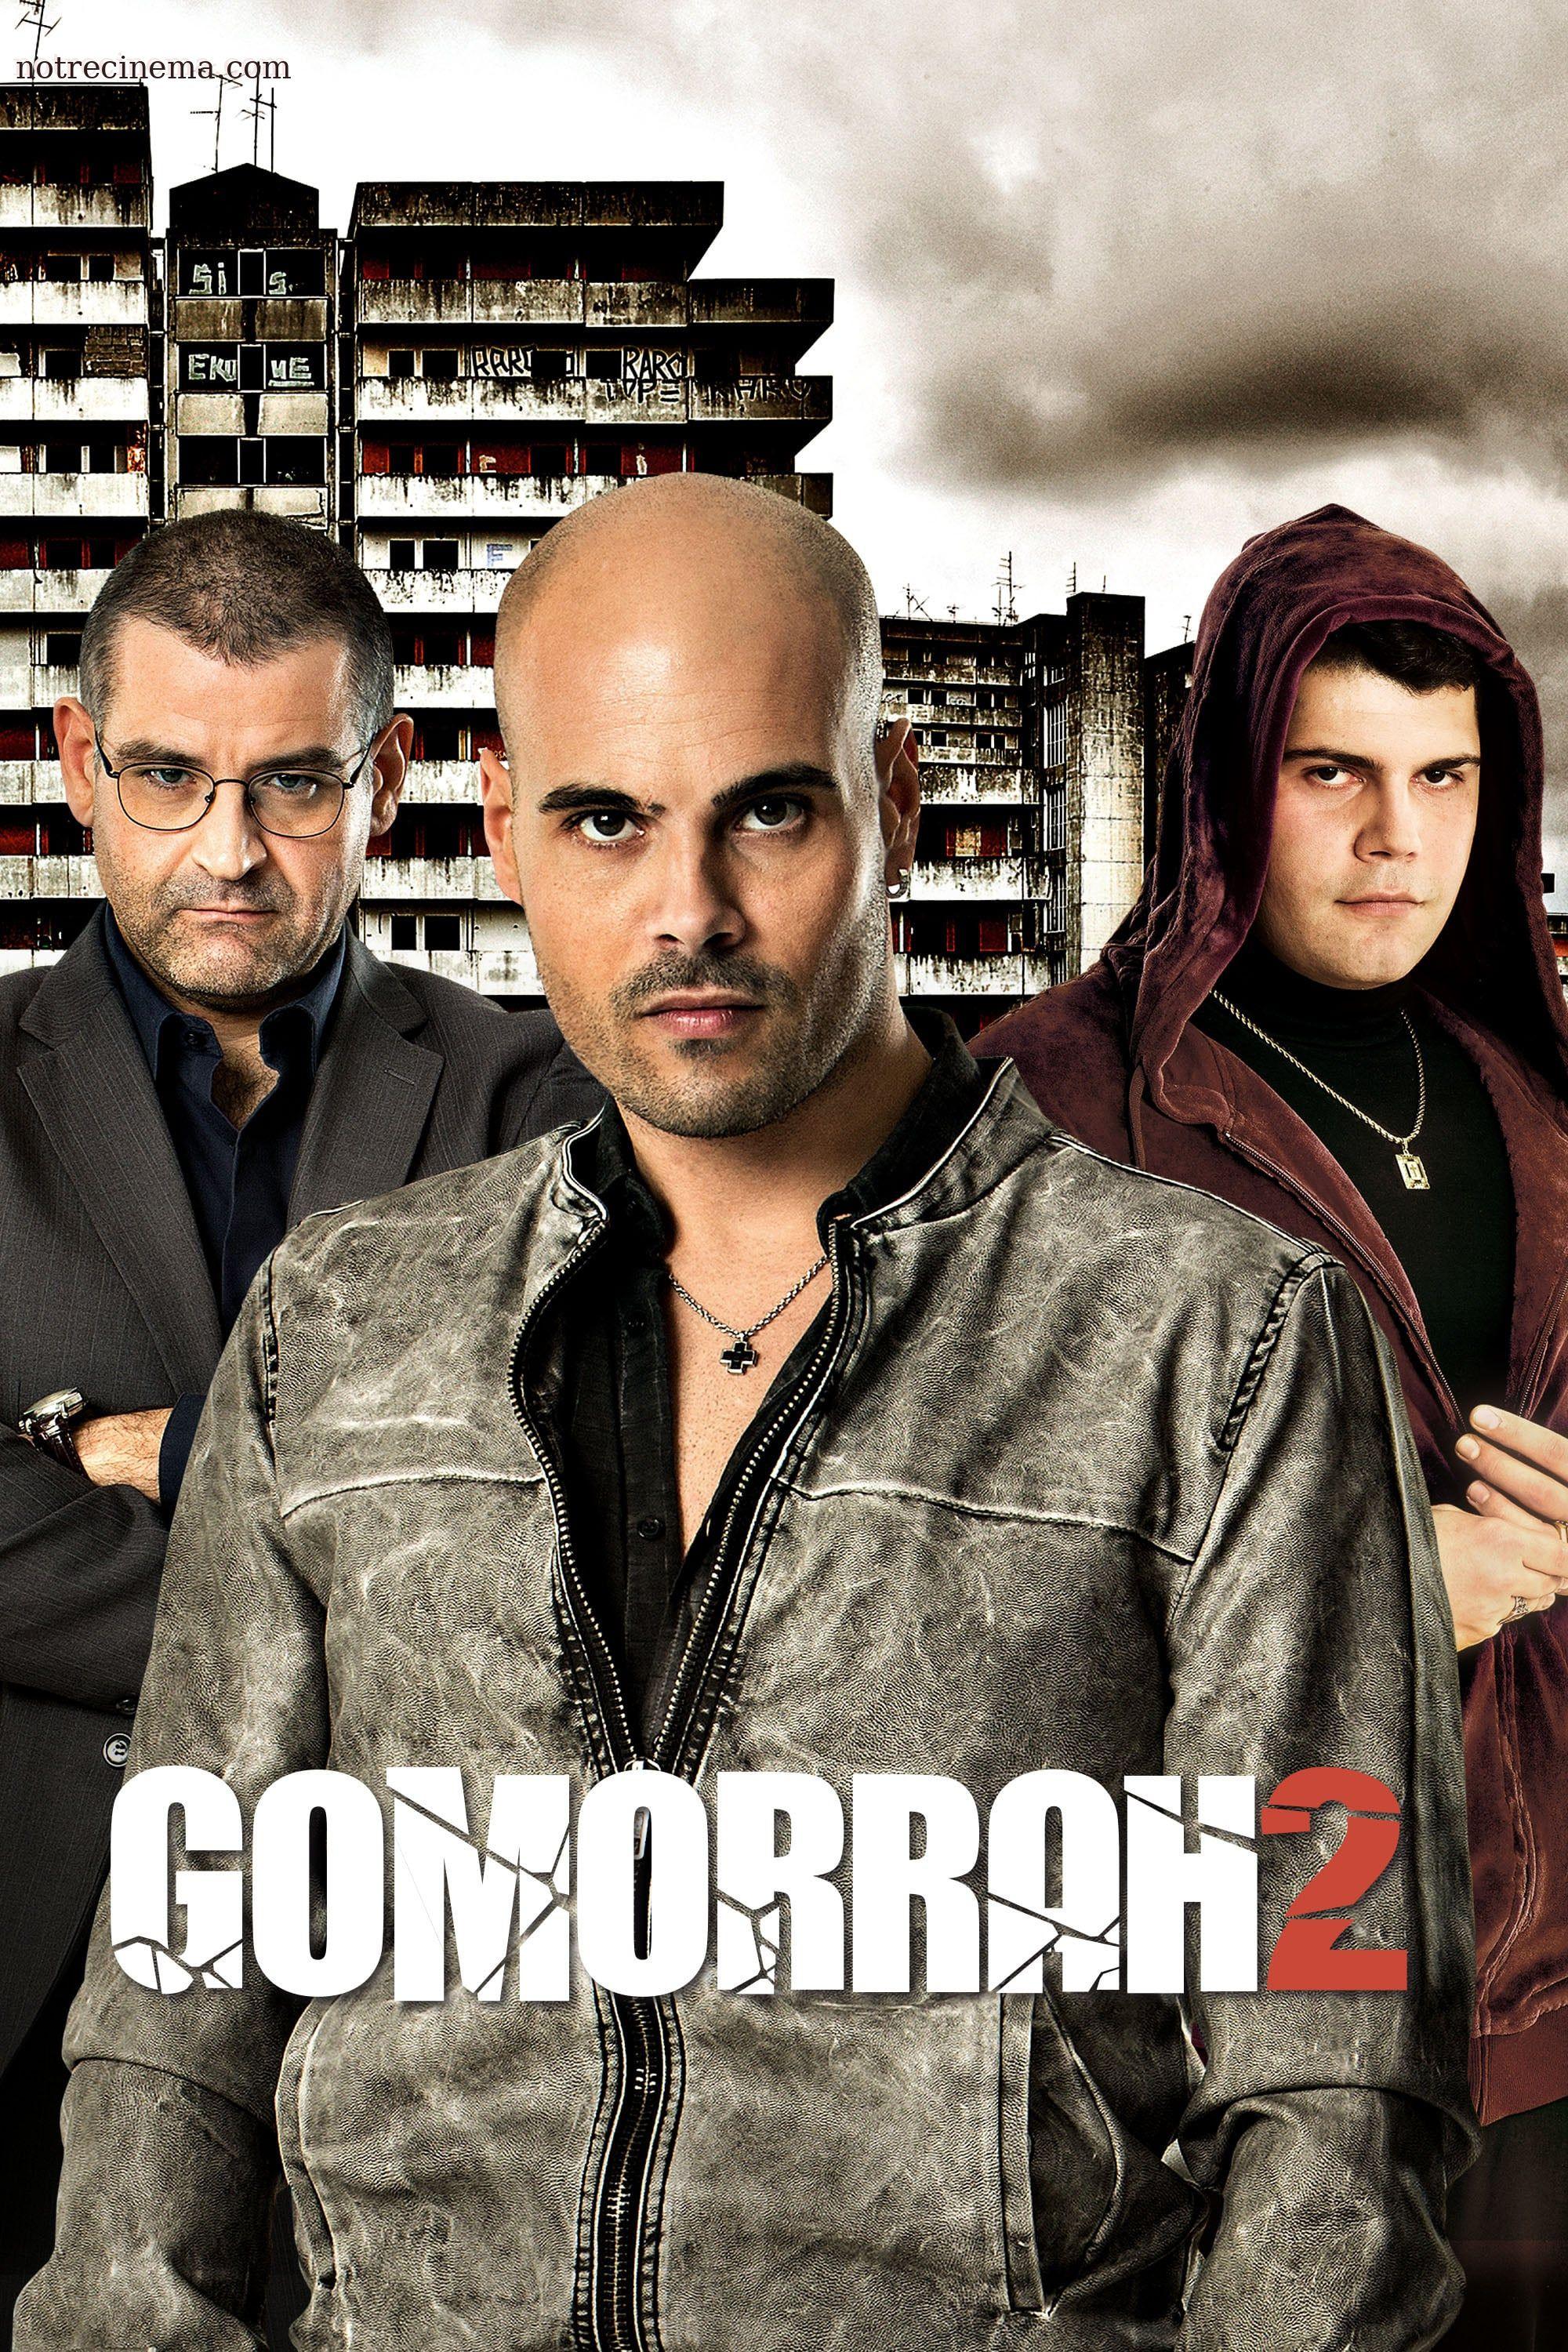 gomorrah full movie online